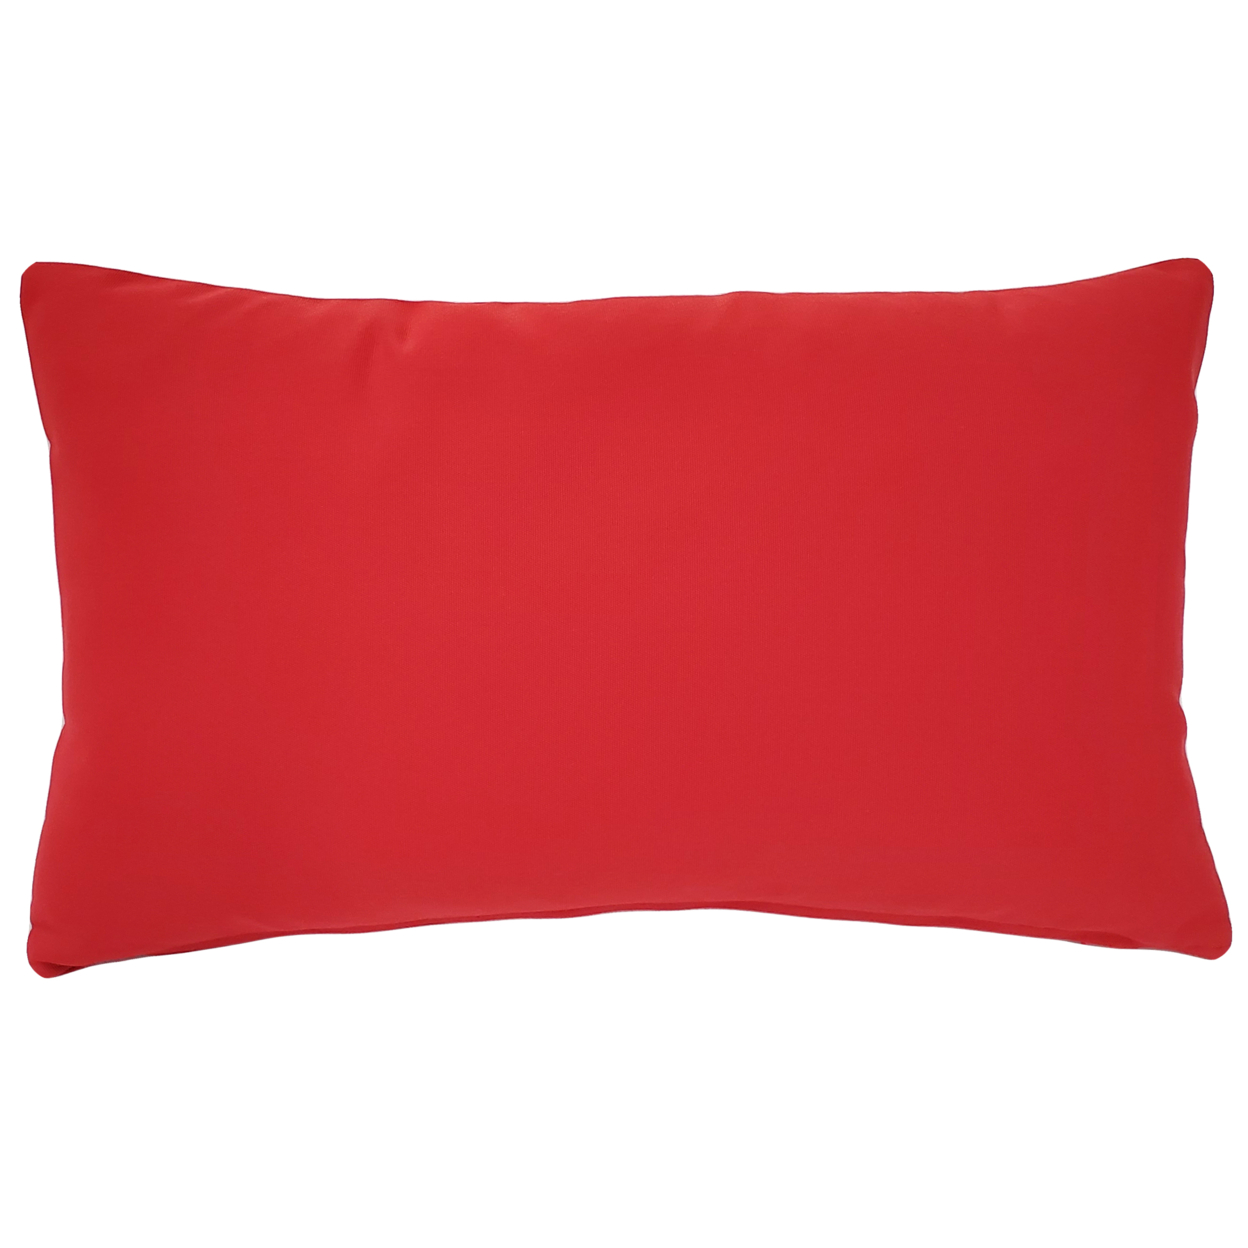 Sunbrella Jockey Red Outdoor Pillow 12x19, With Polyfill Insert